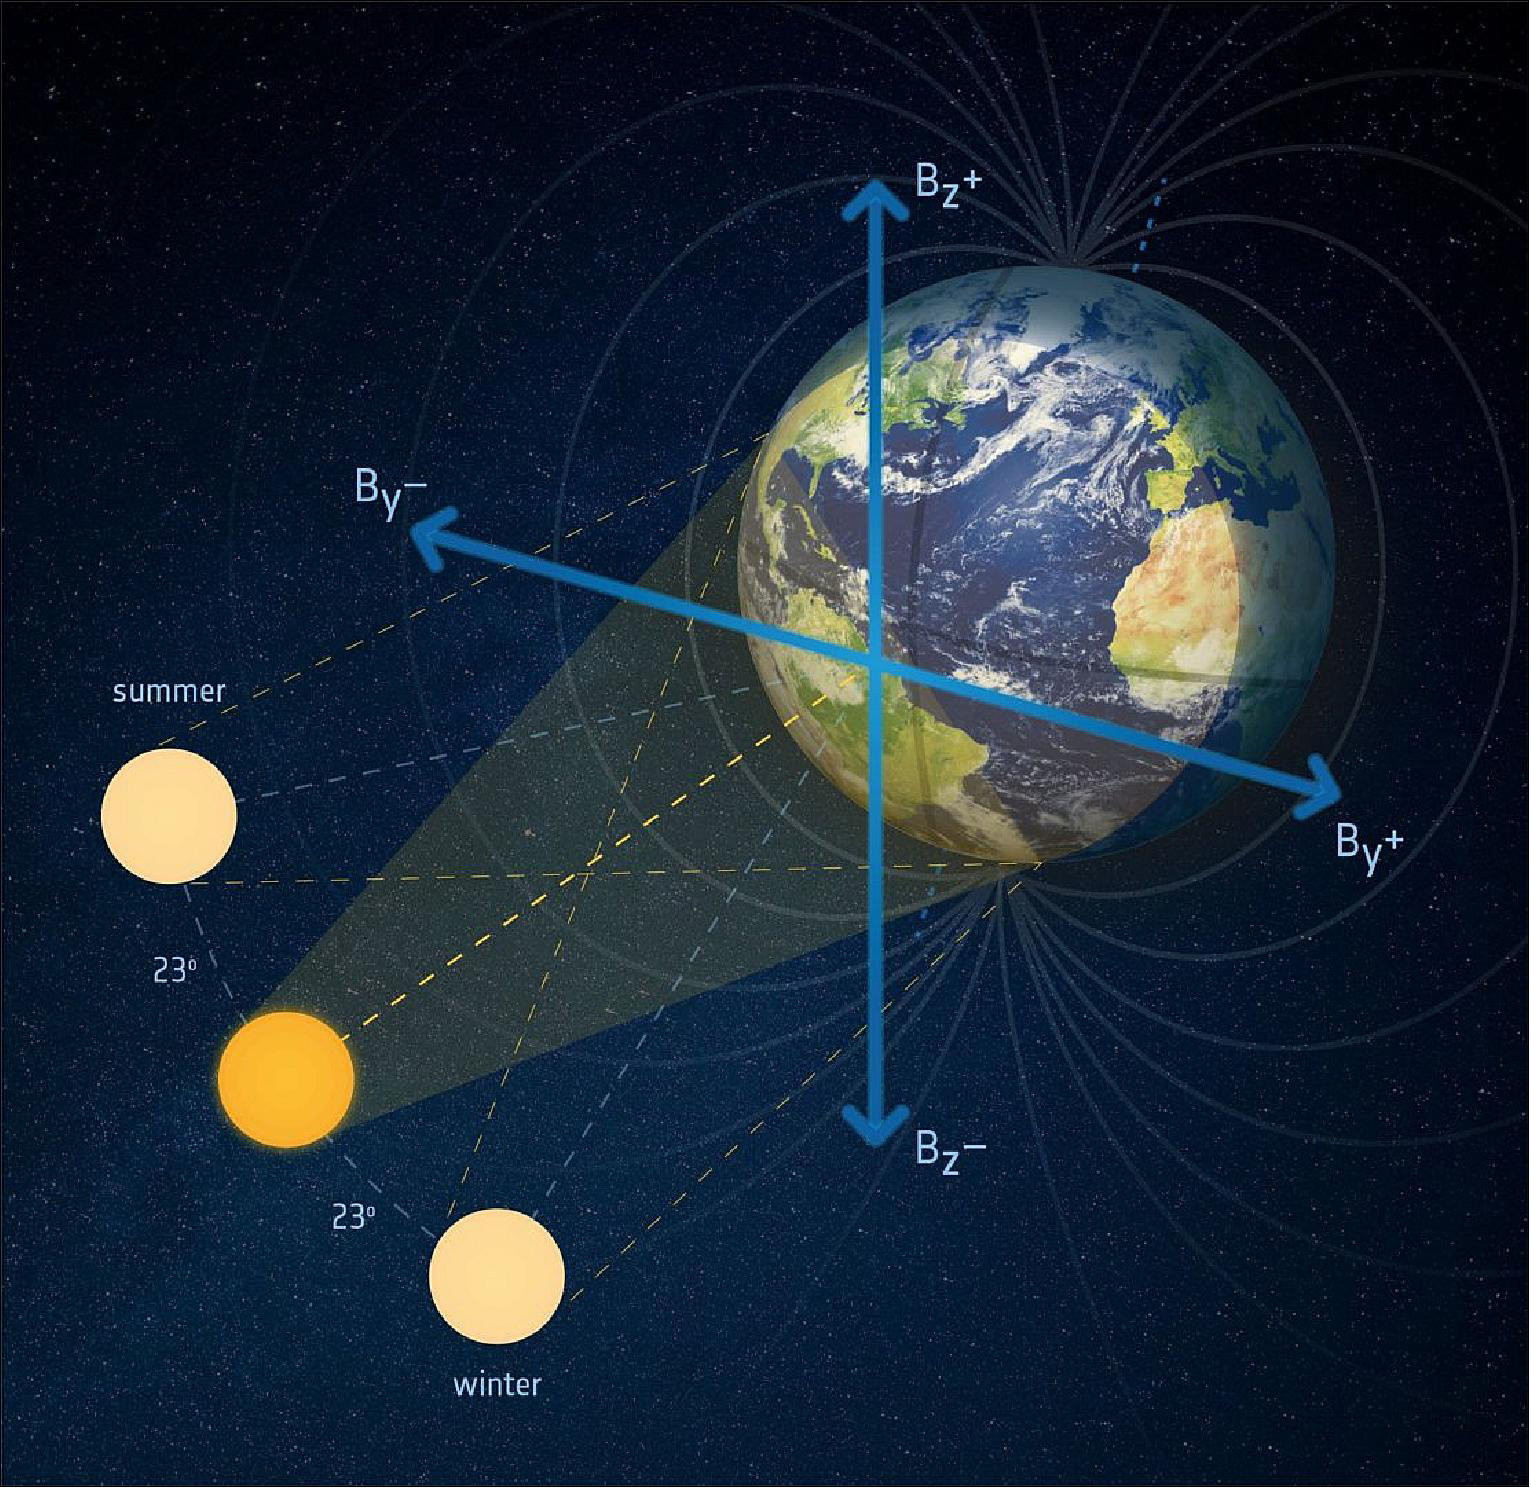 Расположенные вокруг Земли спутники внезапно начали падать: физики считают, что их сдвинуло резкое излучение извне